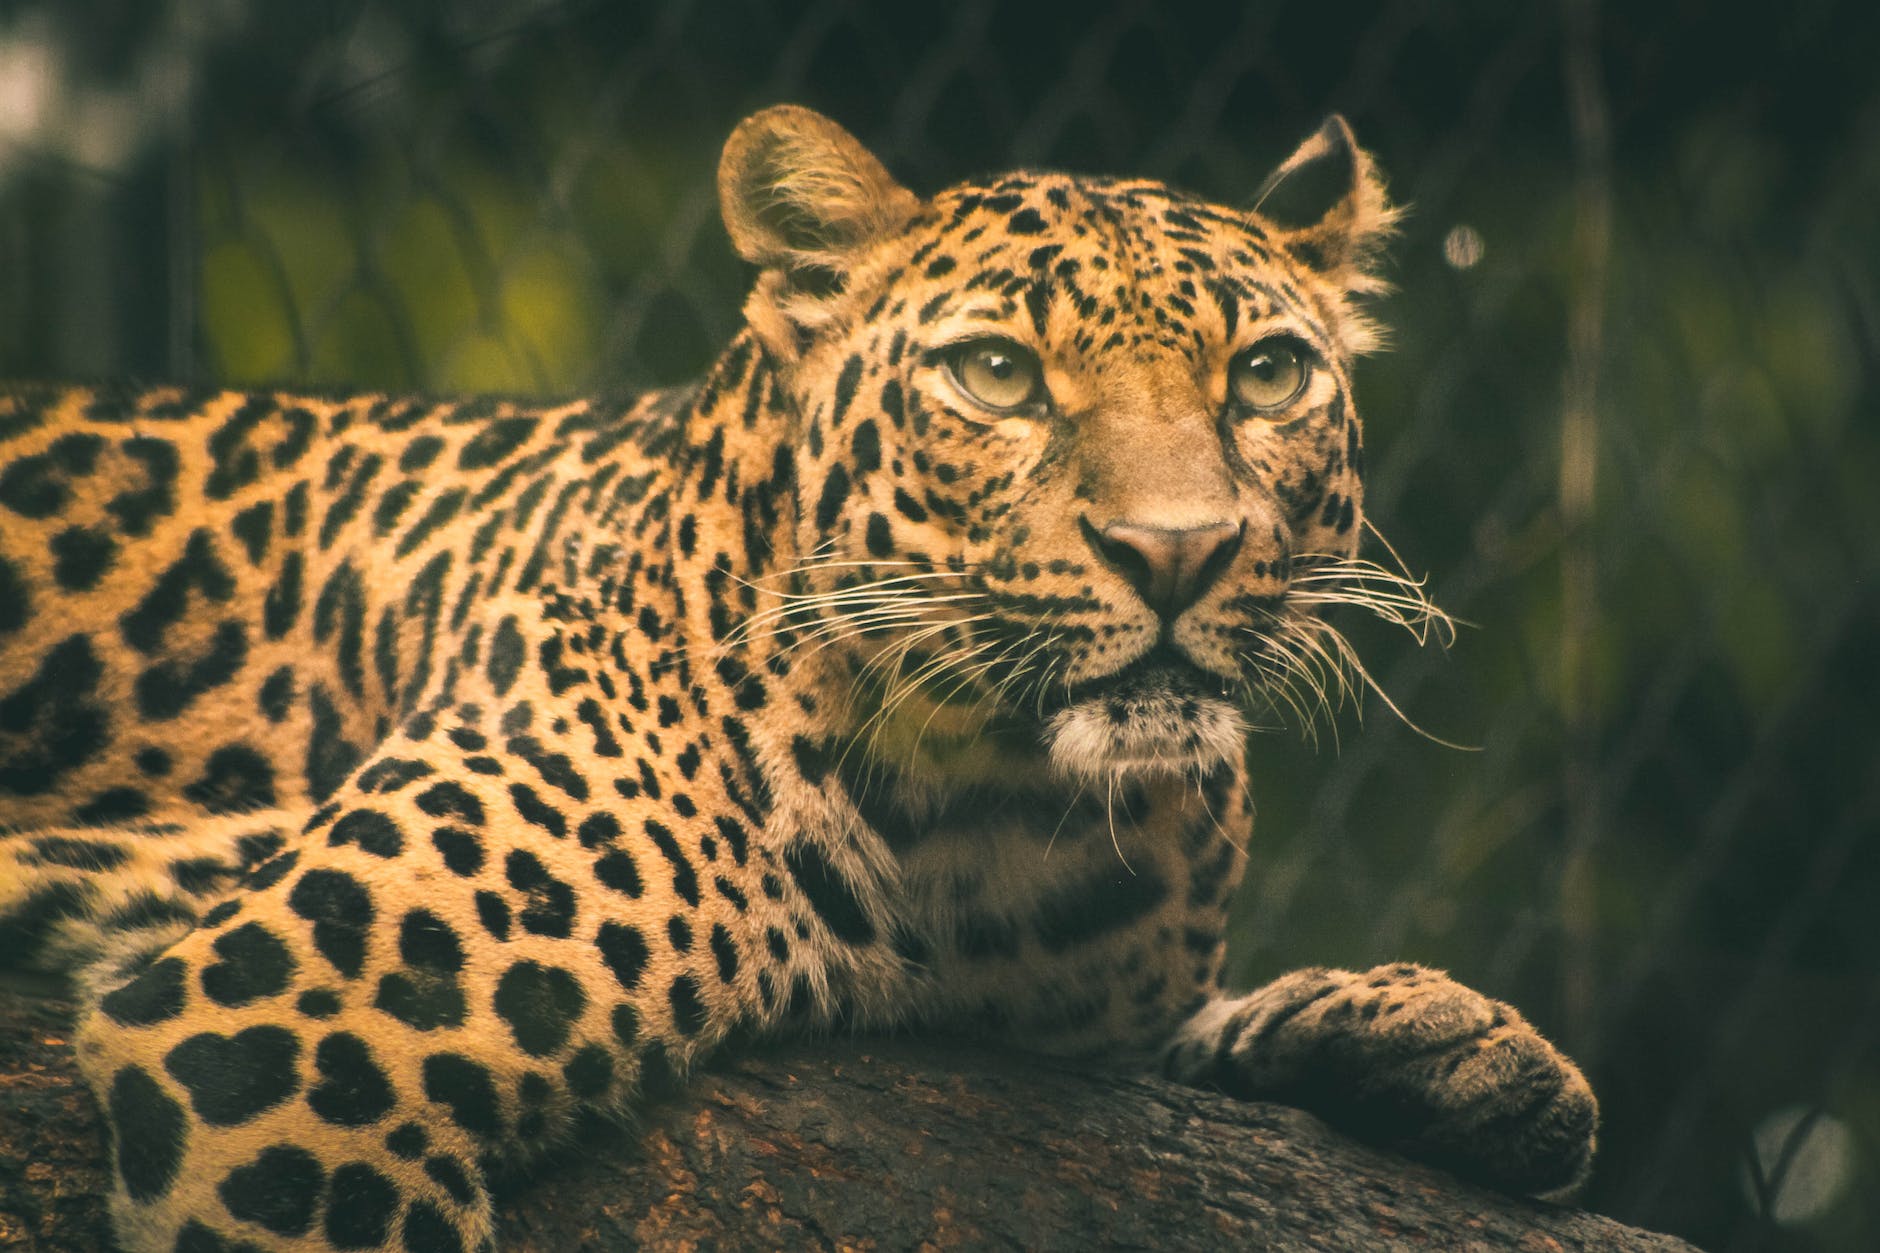 Meet the Amur Leopard